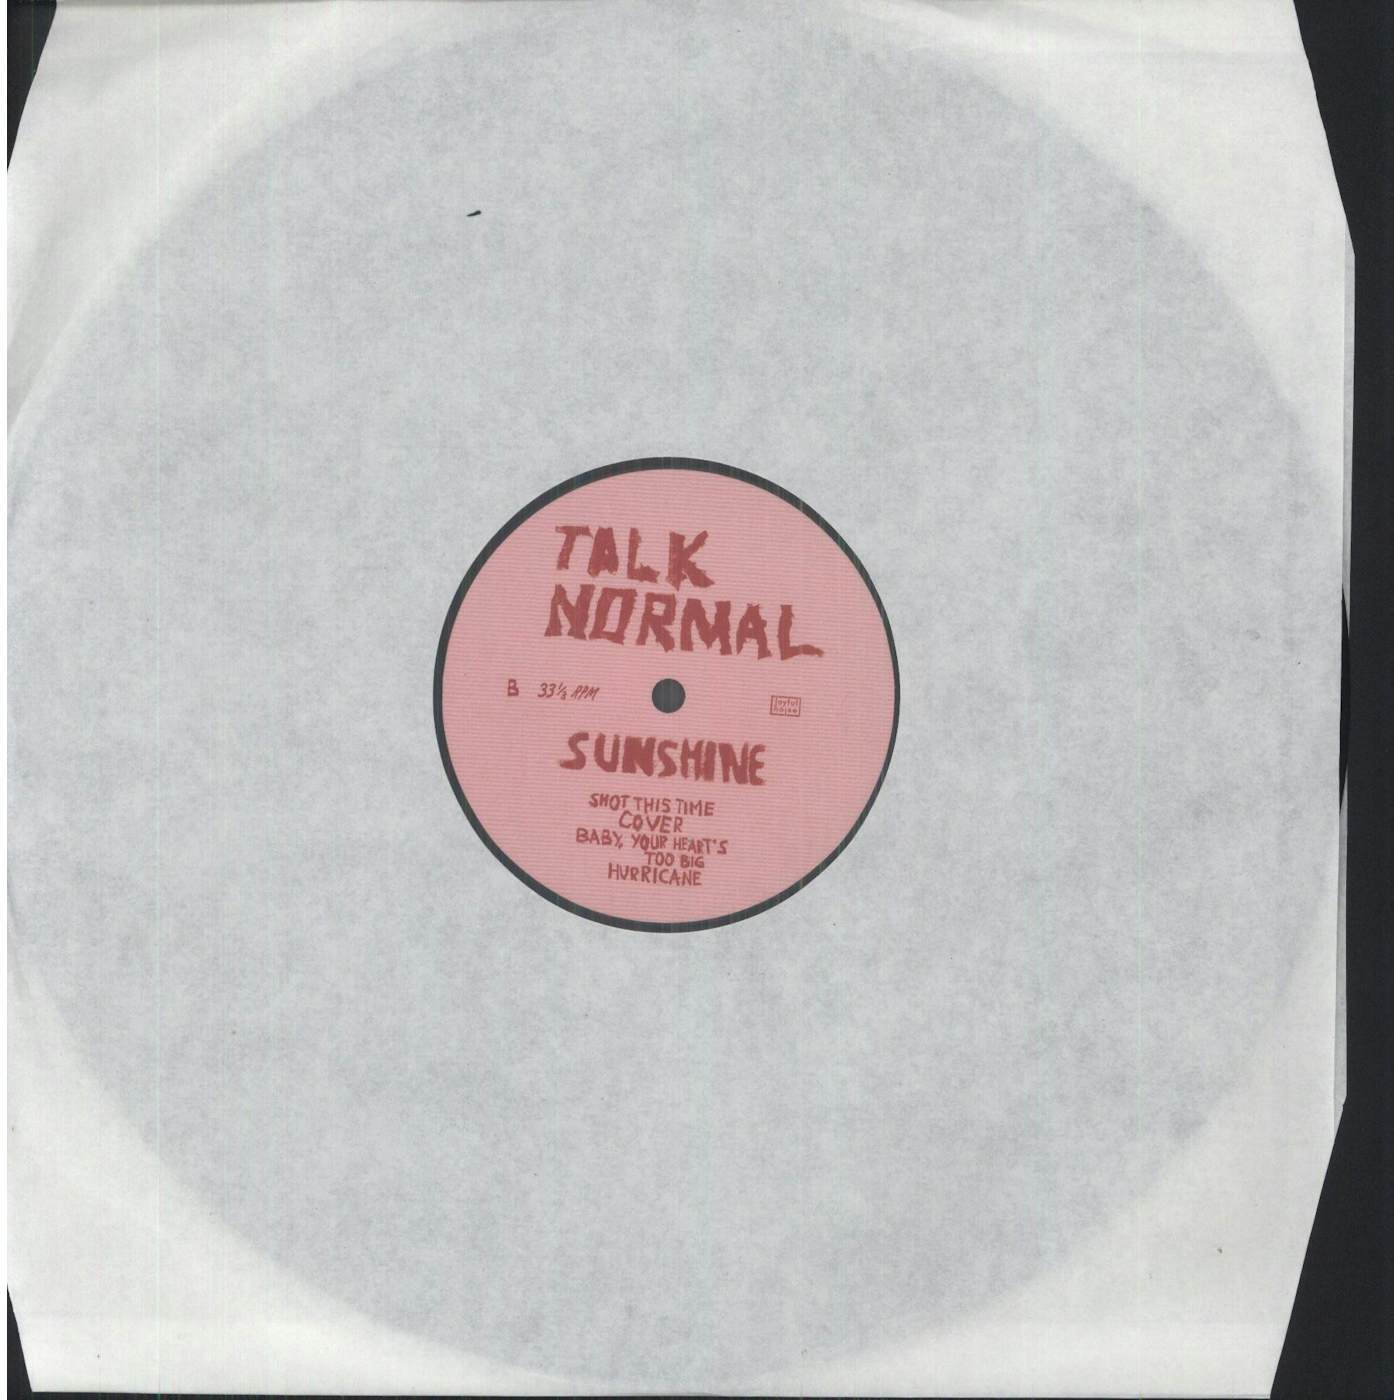 Talk Normal Sunshine Vinyl Record